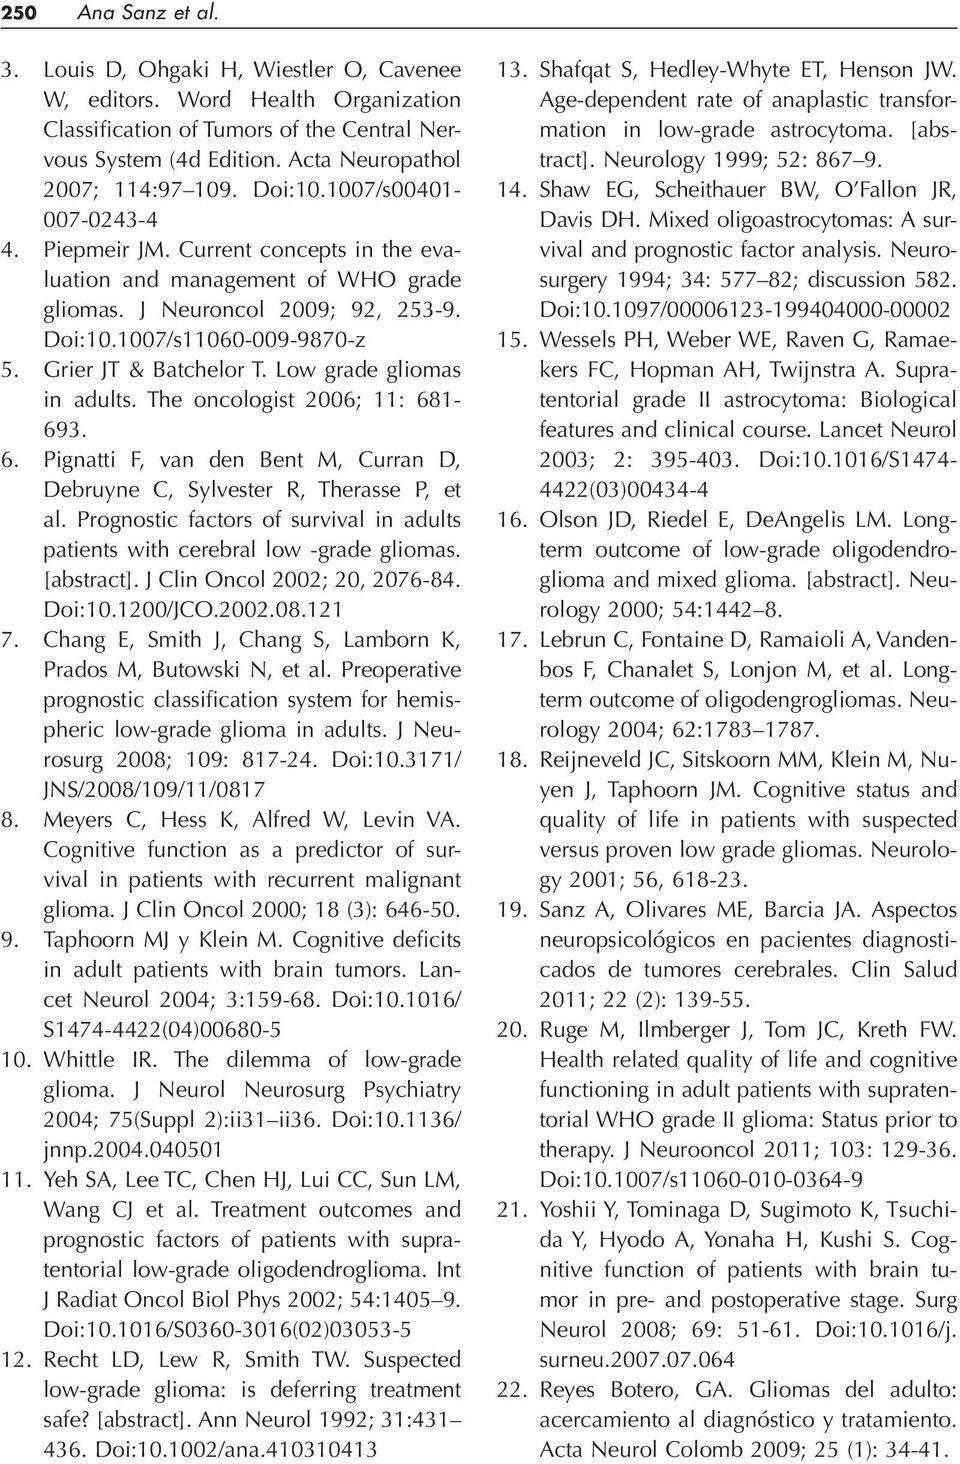 Grier JT & Batchelor T. Low grade gliomas in adults. The oncologist 2006; 11: 681-693. 6. Pignatti F, van den Bent M, Curran D, Debruyne C, Sylvester R, Therasse P, et al.